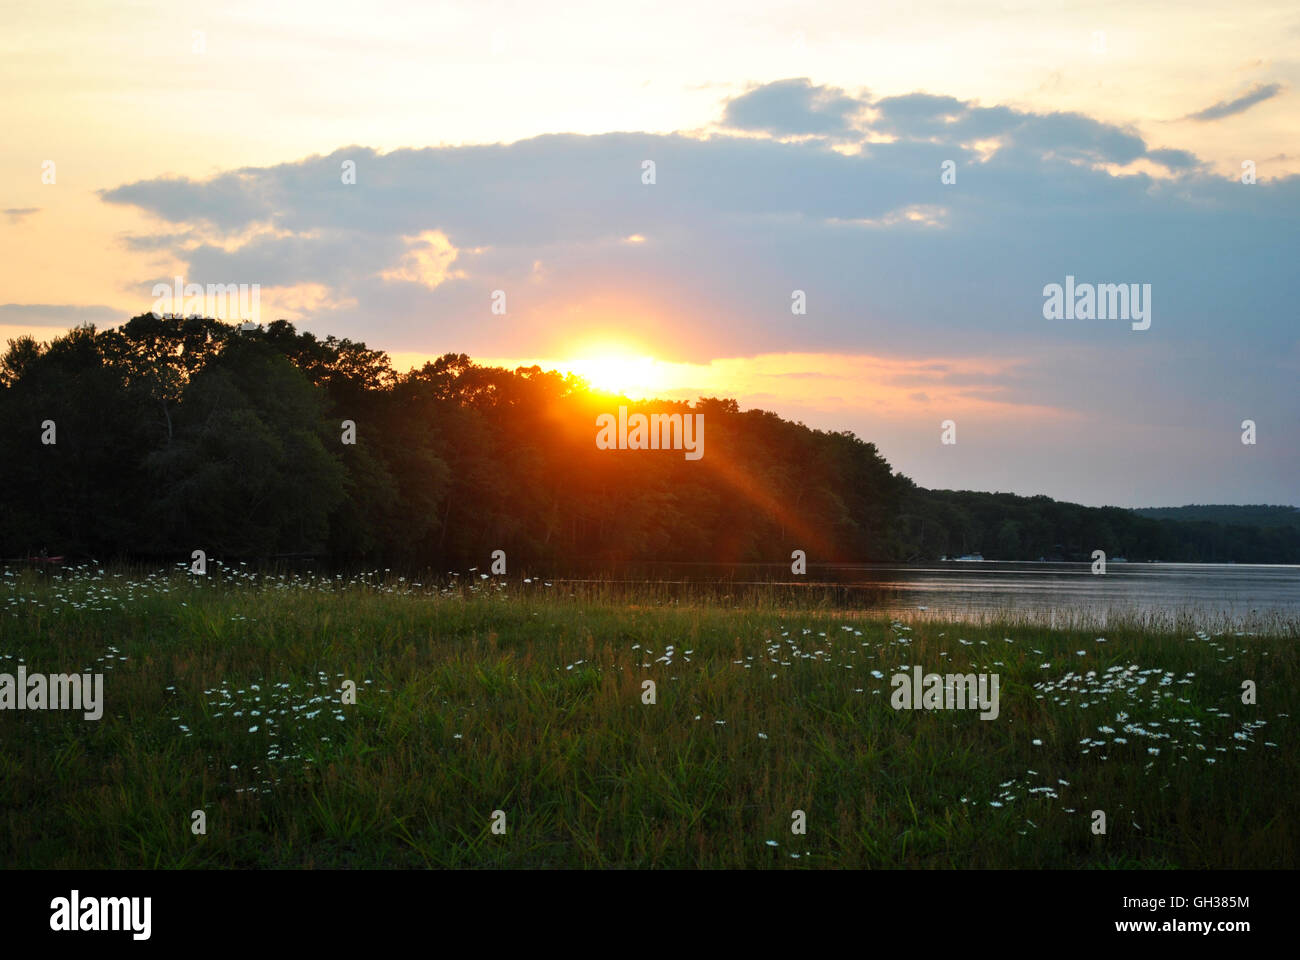 Glorioso atardecer de verano en un tranquilo estanque Foto de stock